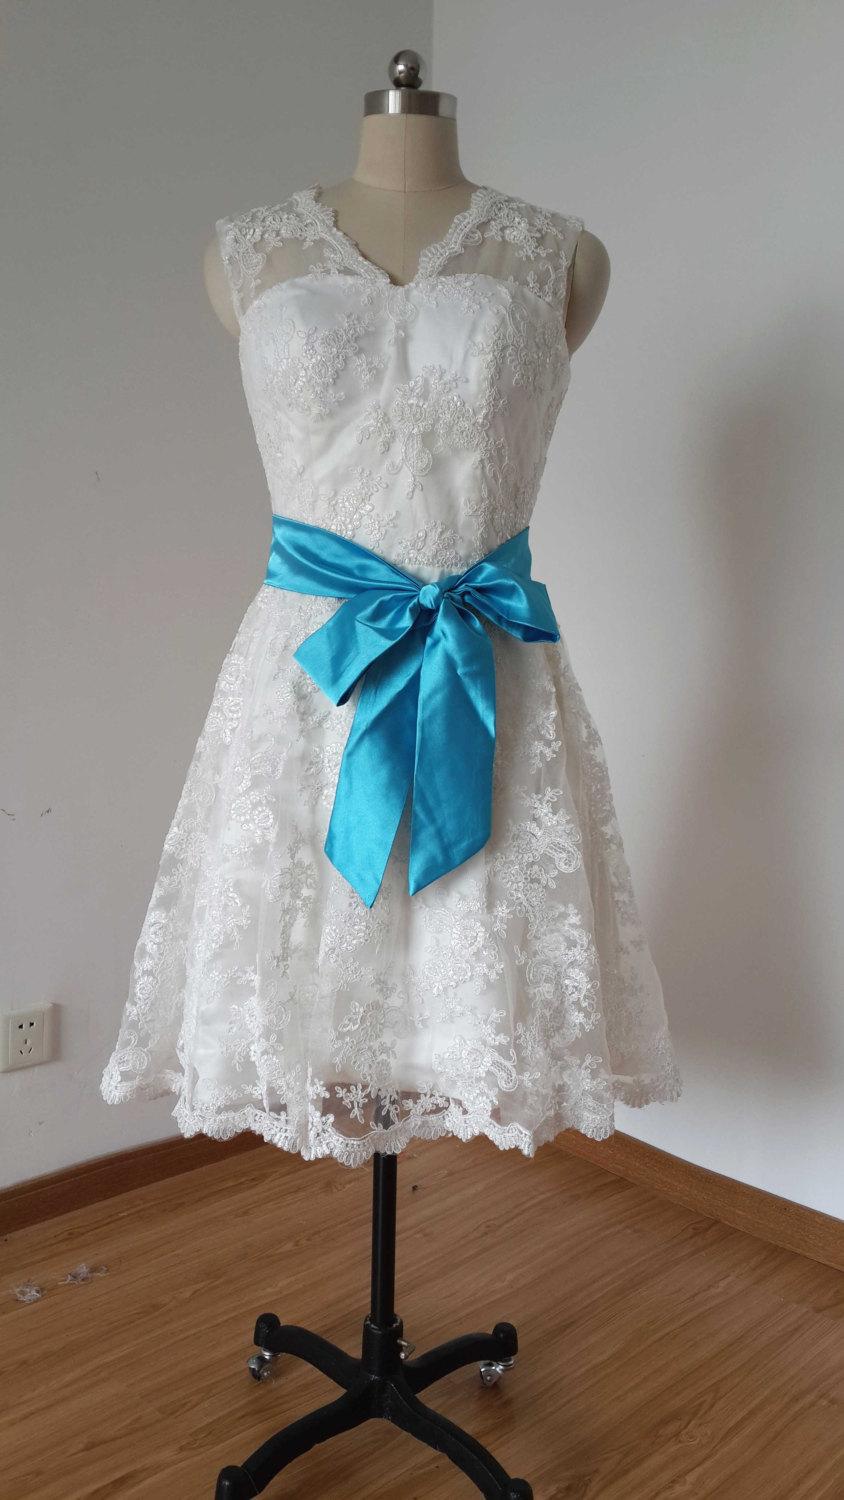 زفاف - V-Neck Backless Short Ivory Lace Wedding Dress with Teal Blue Sash